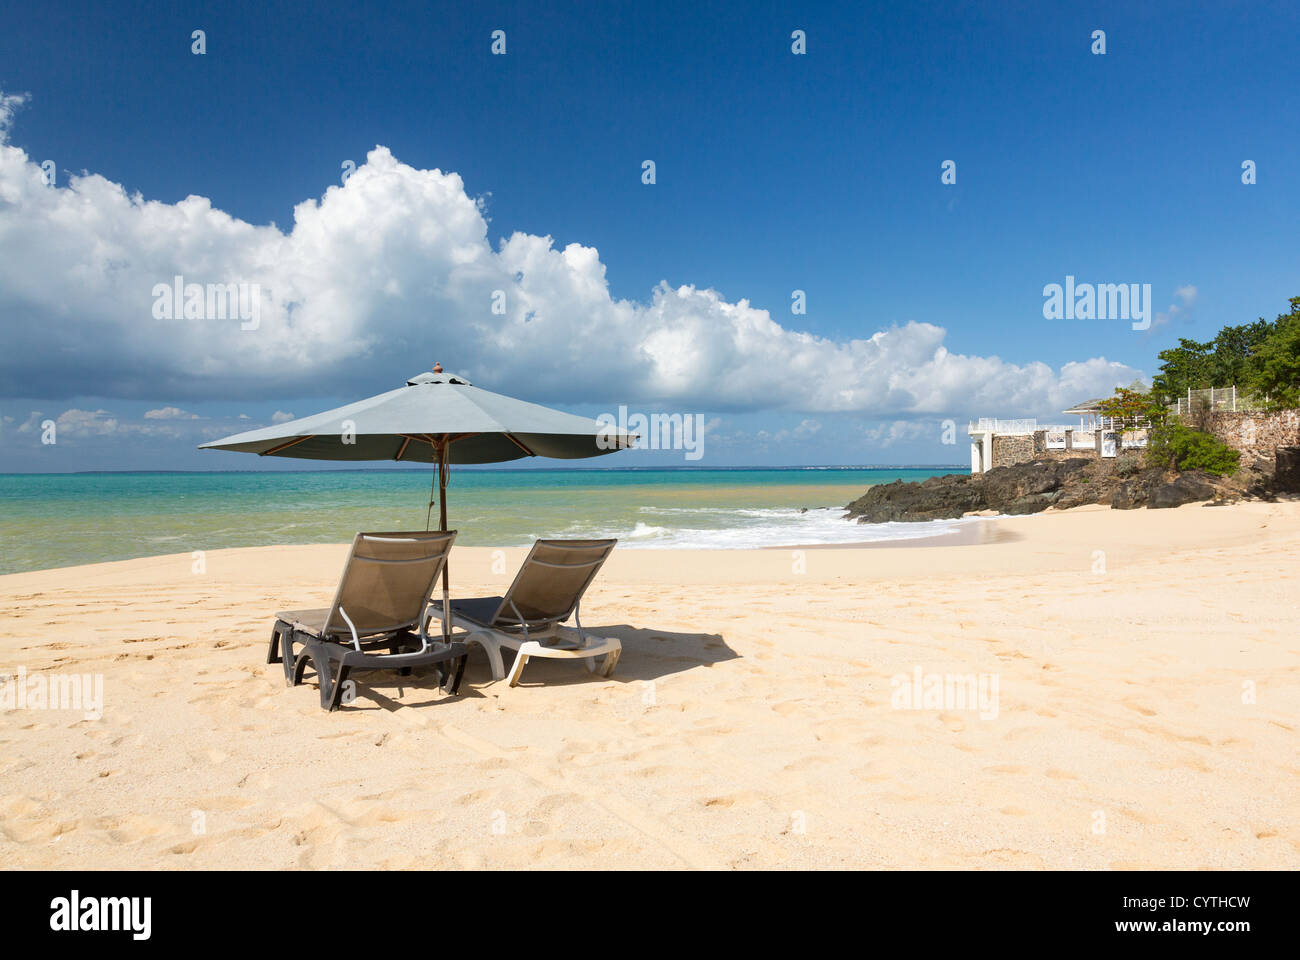 Playa reclinables tumbonas y sombrilla de Baie Rouge tropical beach en St Maarten / St Martin, Caribe Foto de stock